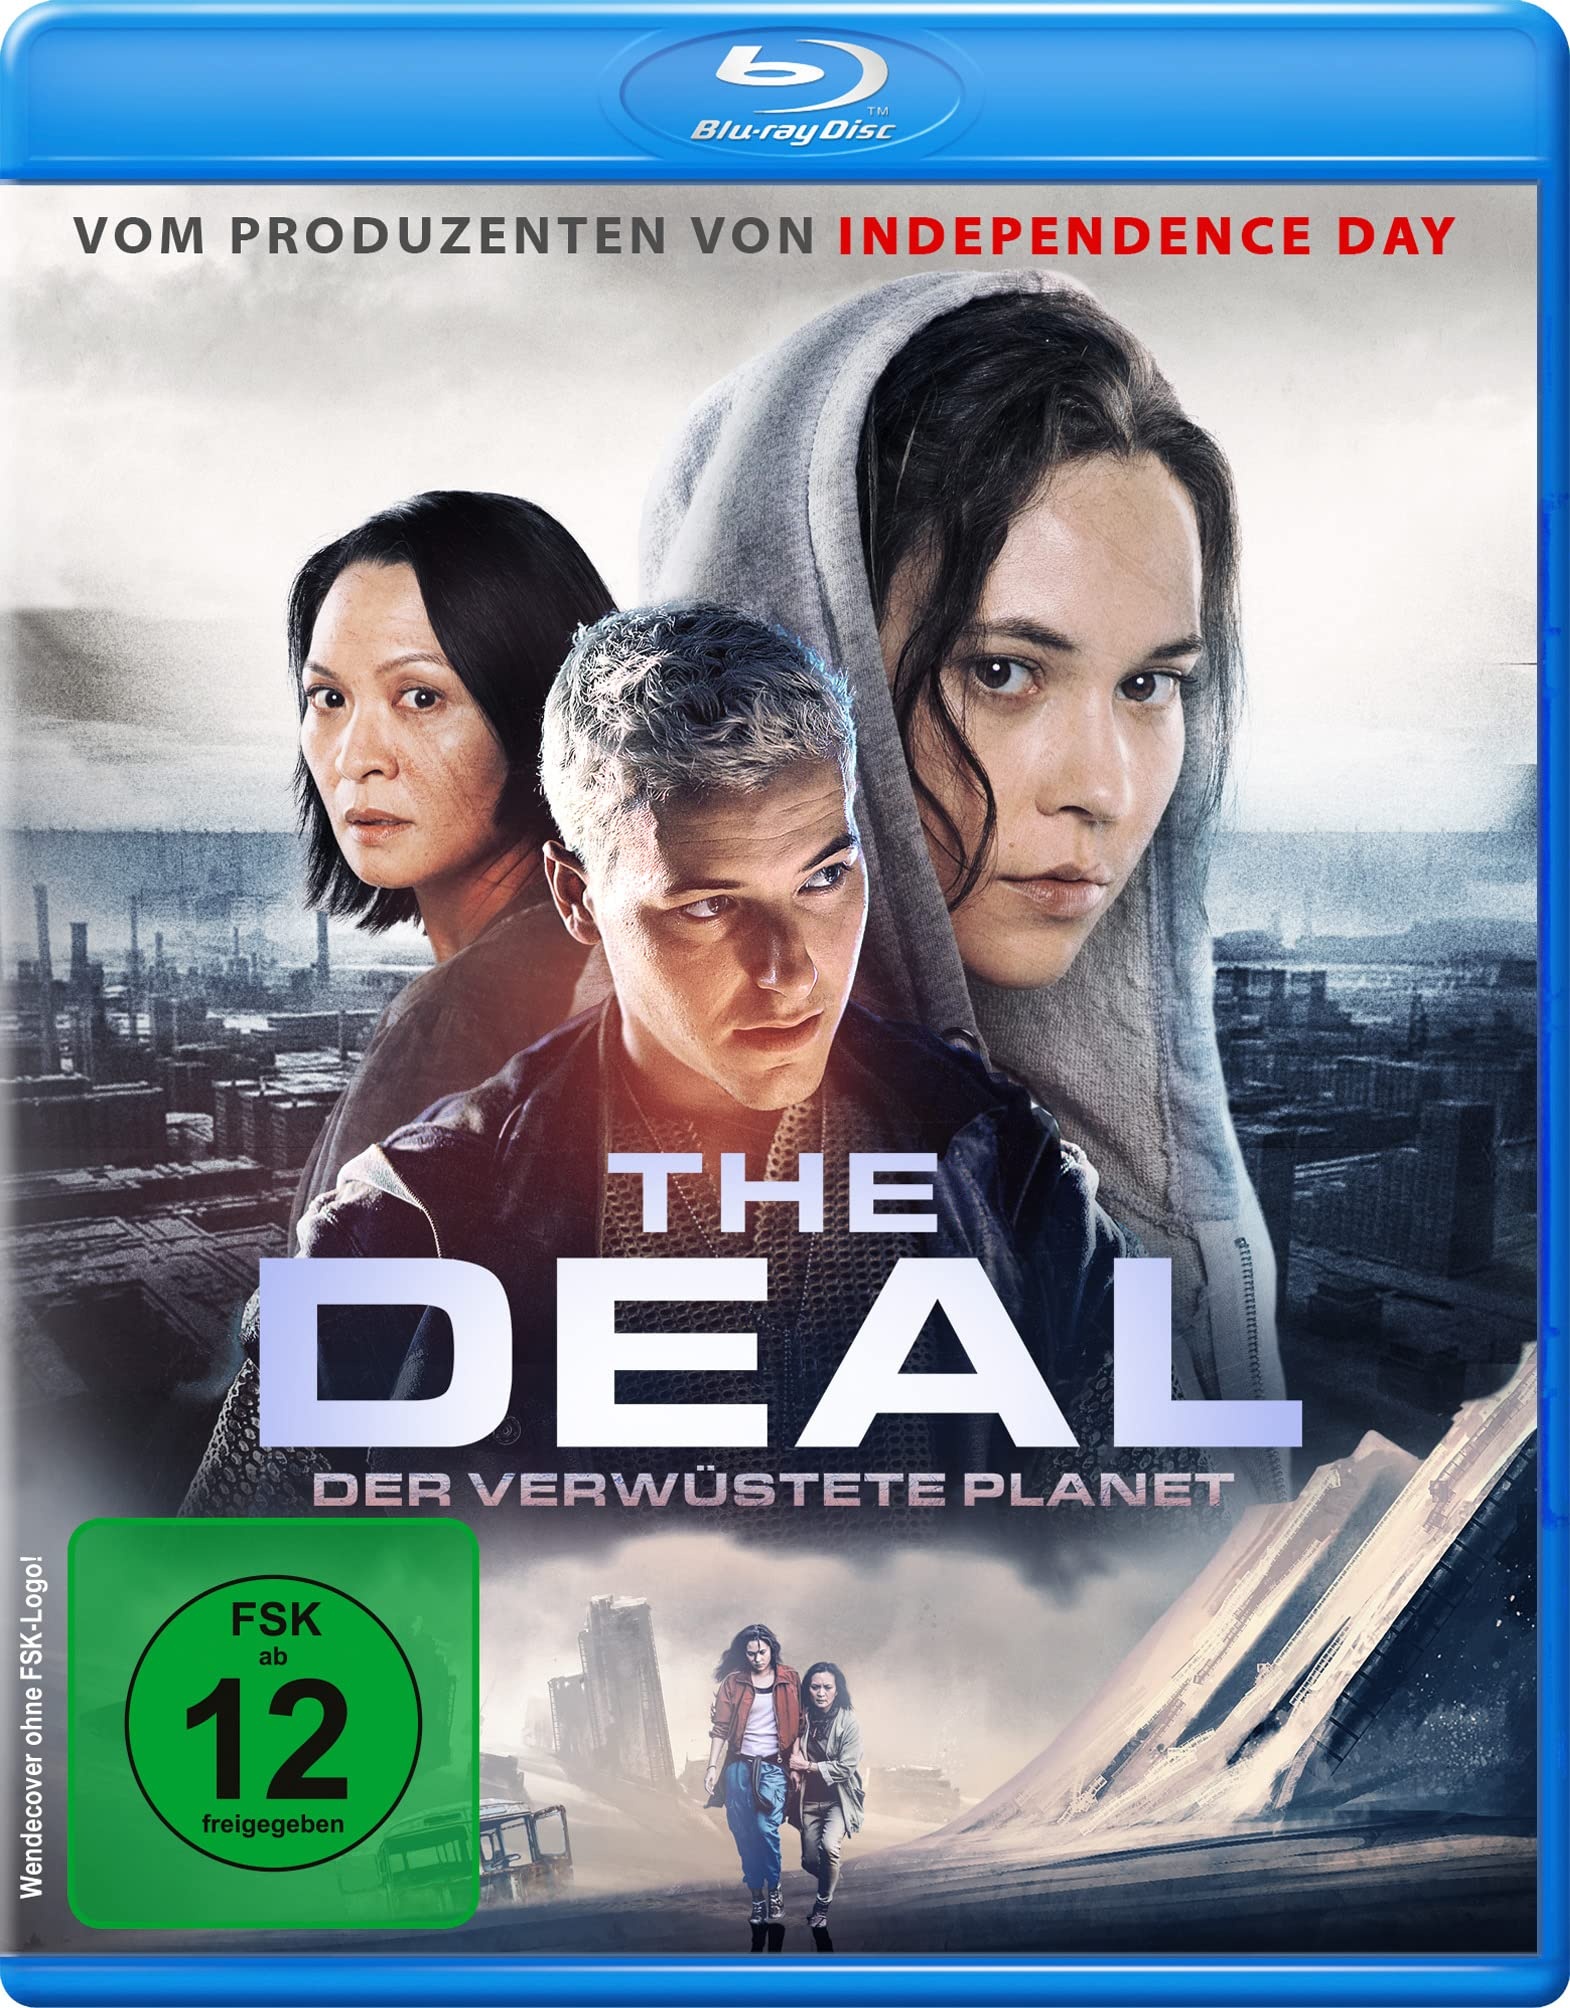 The Deal - Der verwüstete Planet [Blu-ray] (Neu differenzbesteuert)